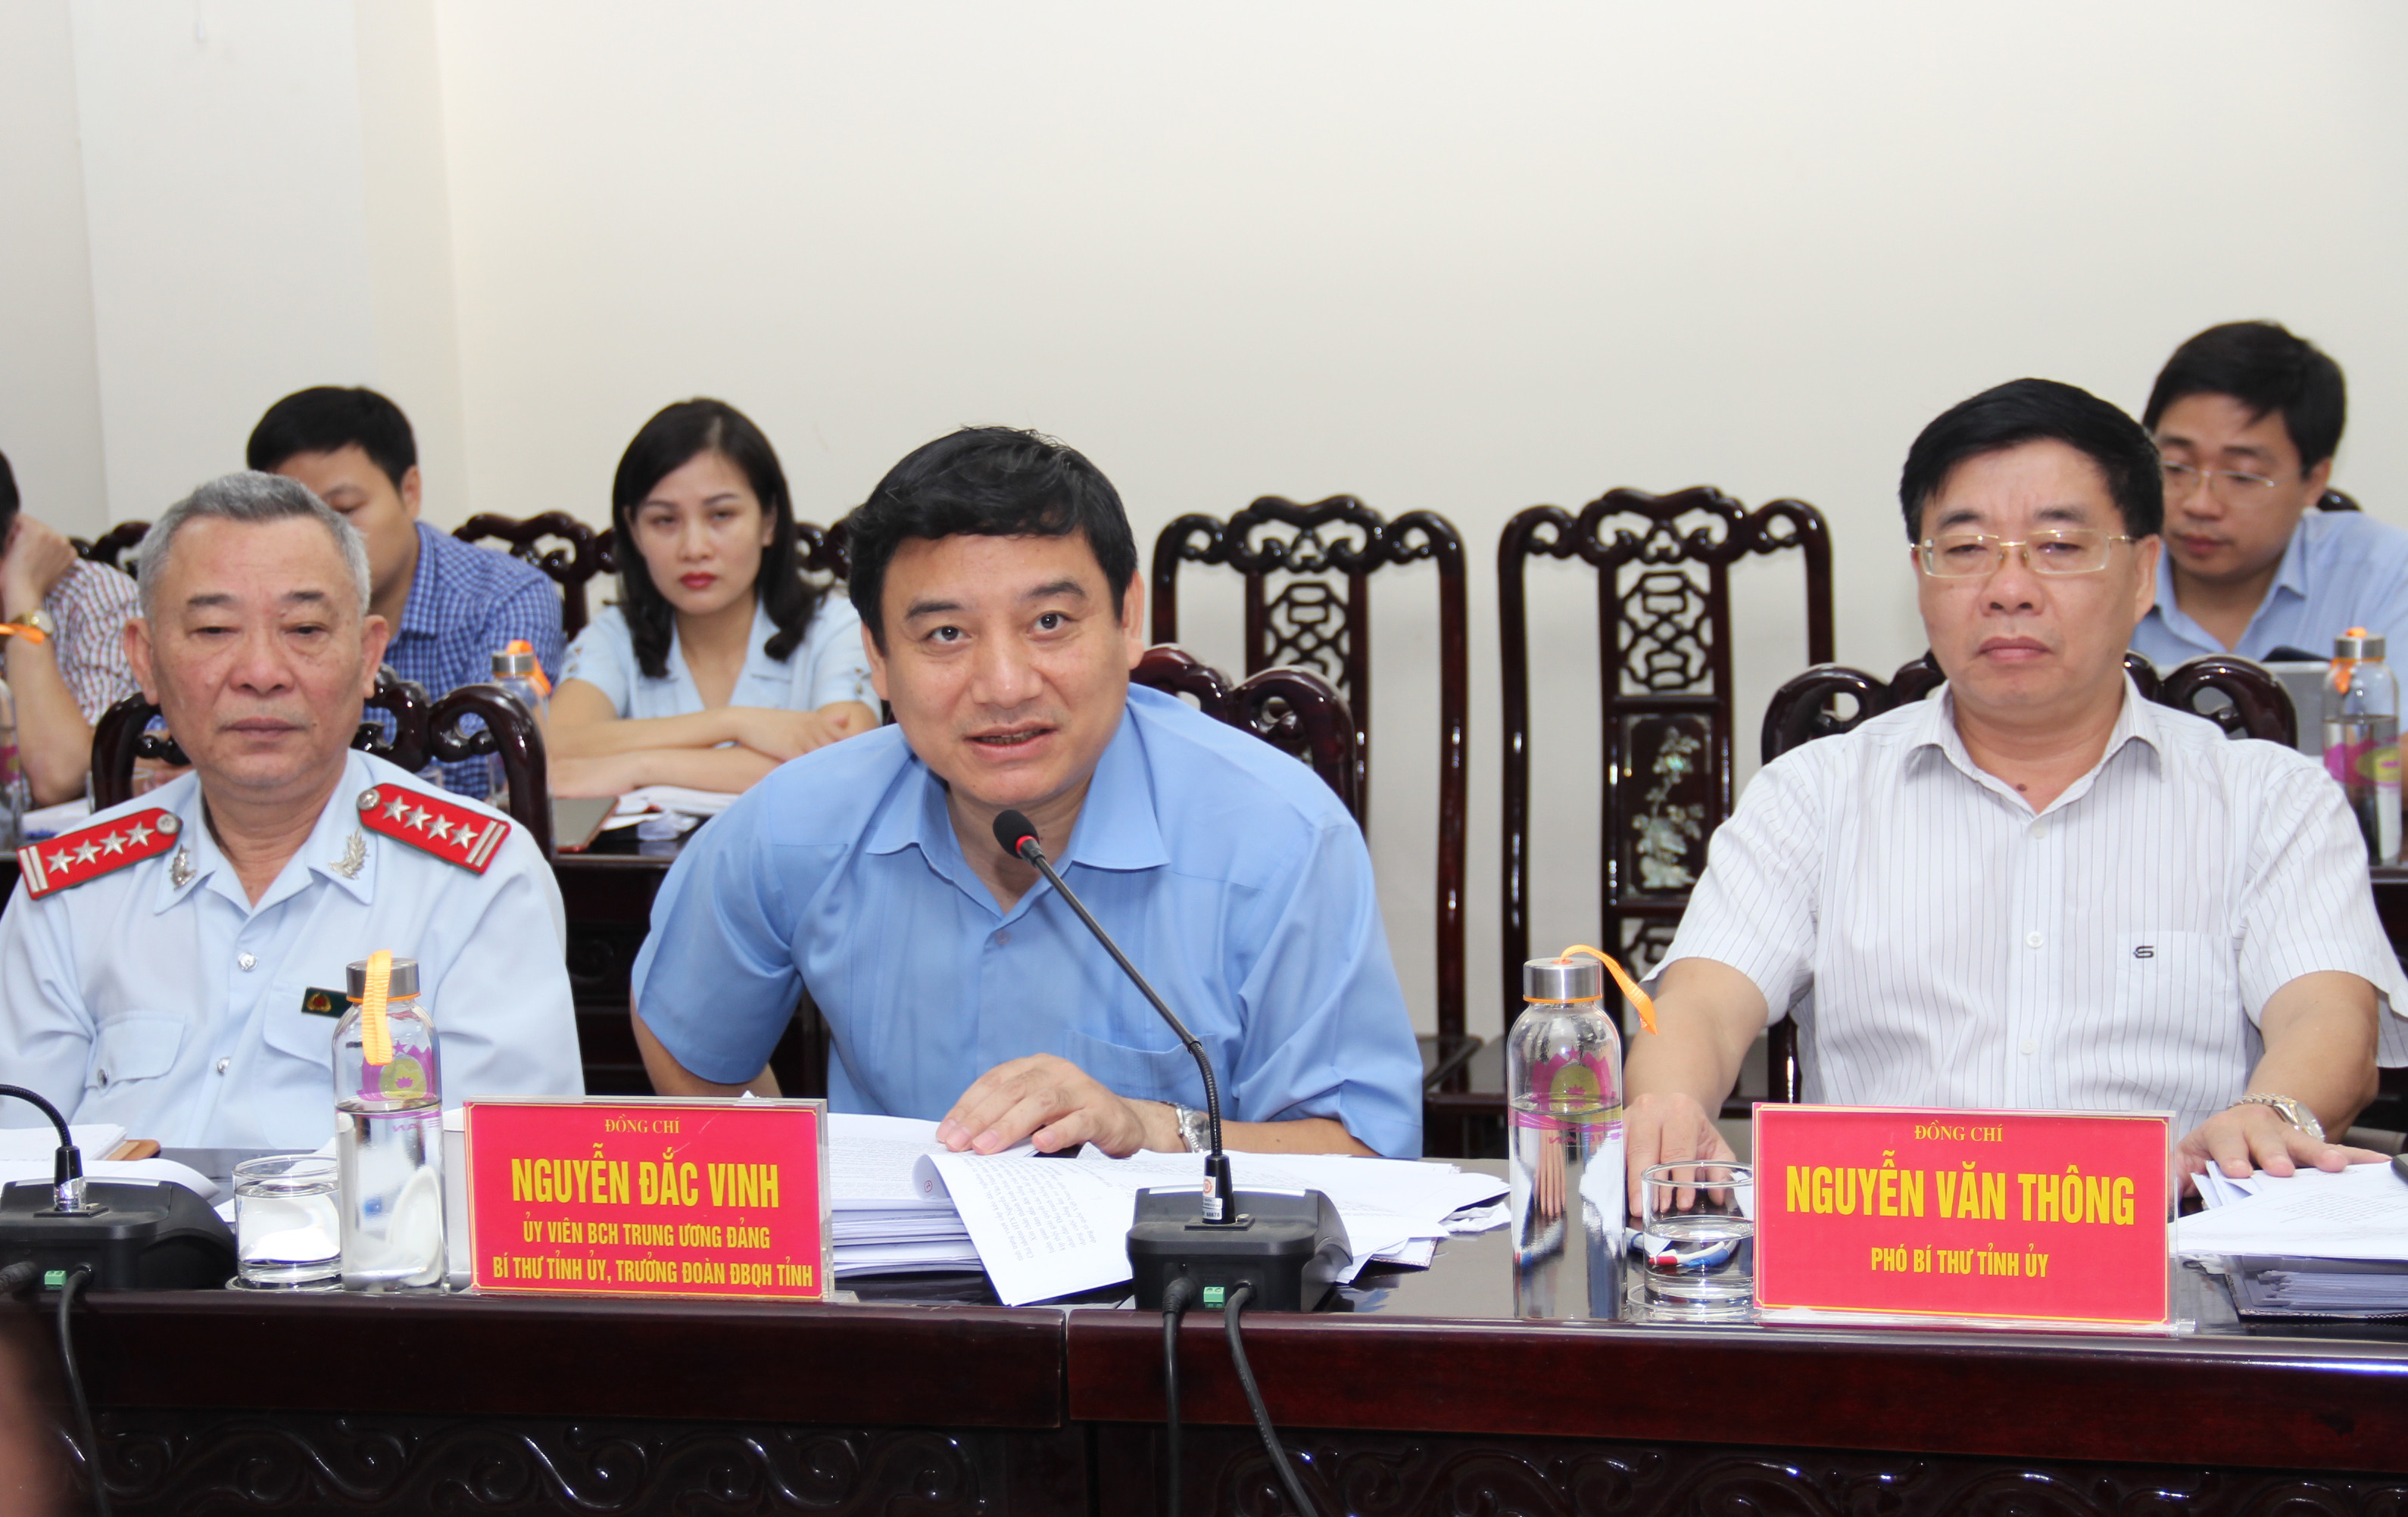 Đồng chí Bí thư Tỉnh ủy Nguyễn Đắc Vinh trả lời các phản ánh, kiến nghị của người dân. Ảnh: Hoài Thu